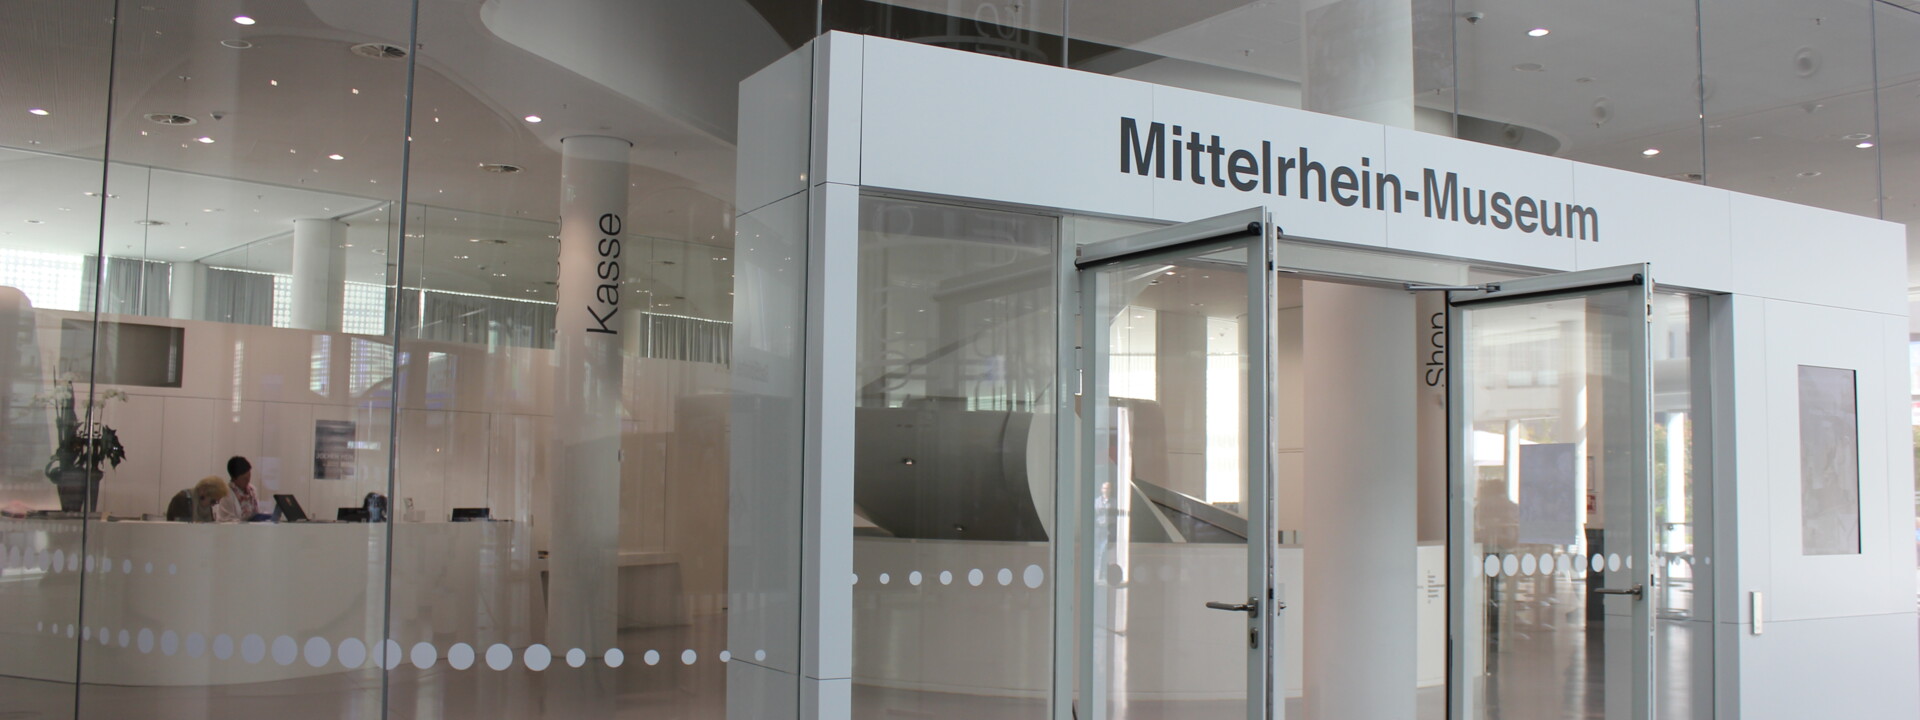 Haupteingang des Mittelrhein-Museums im Forum Confluentes ©Koblenz-Touristik GmbH